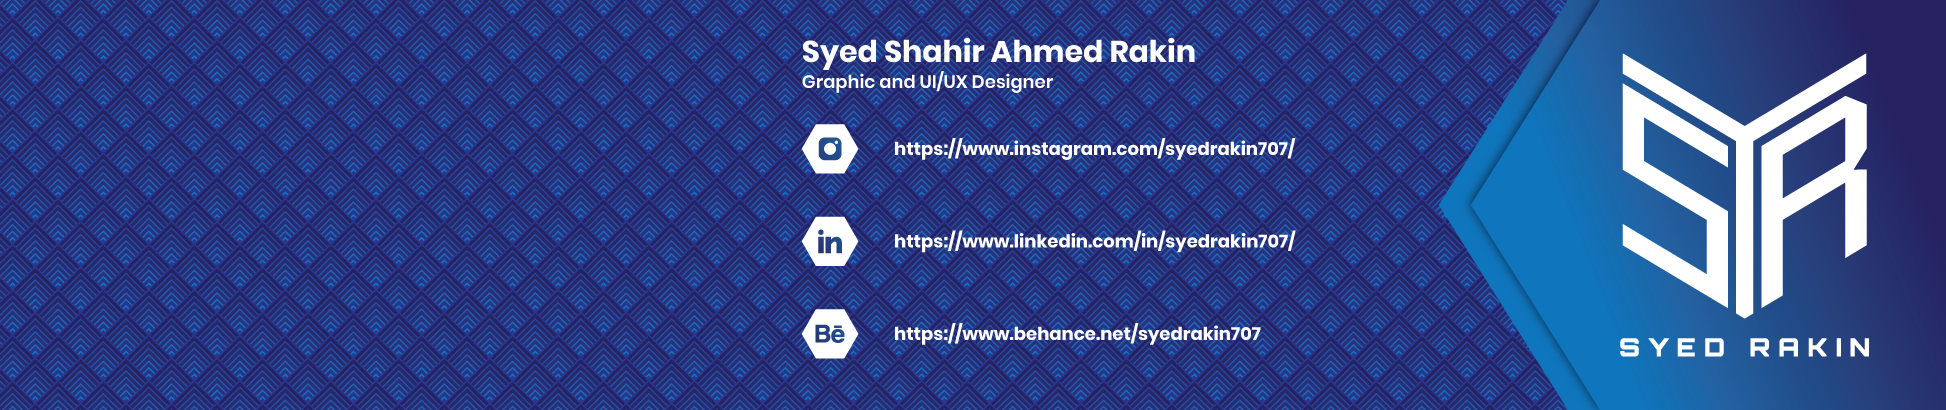 Syed Shahir Ahmed Rakin のプロファイルバナー